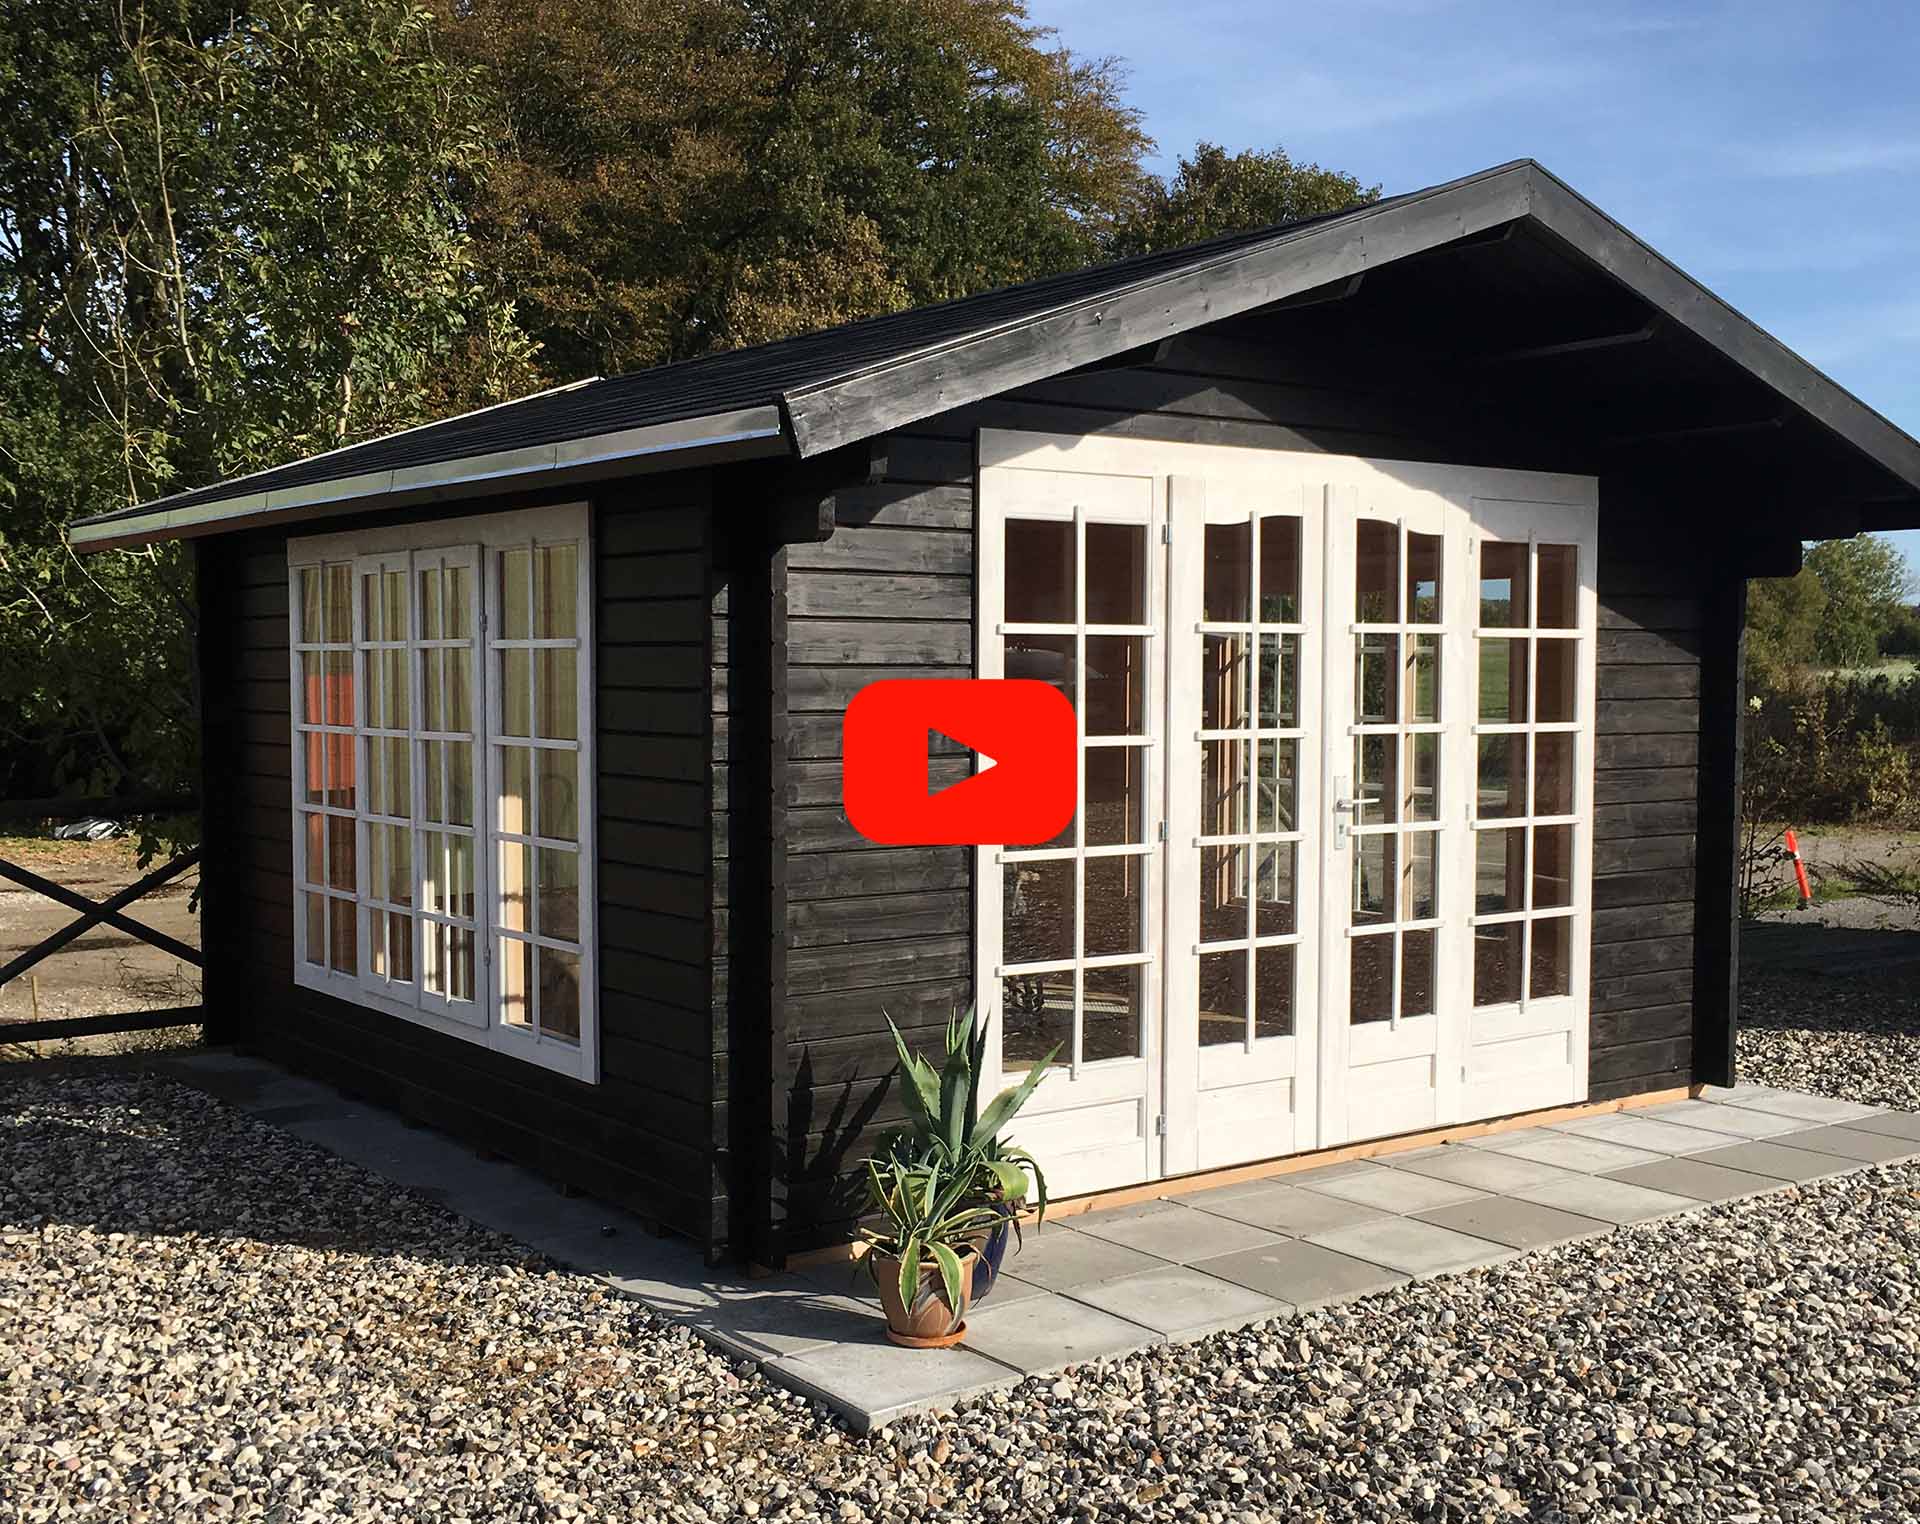 Denne smukke og unikke træhytte er ideel til haven og fås kun hos sølund huse - dansk design hytte